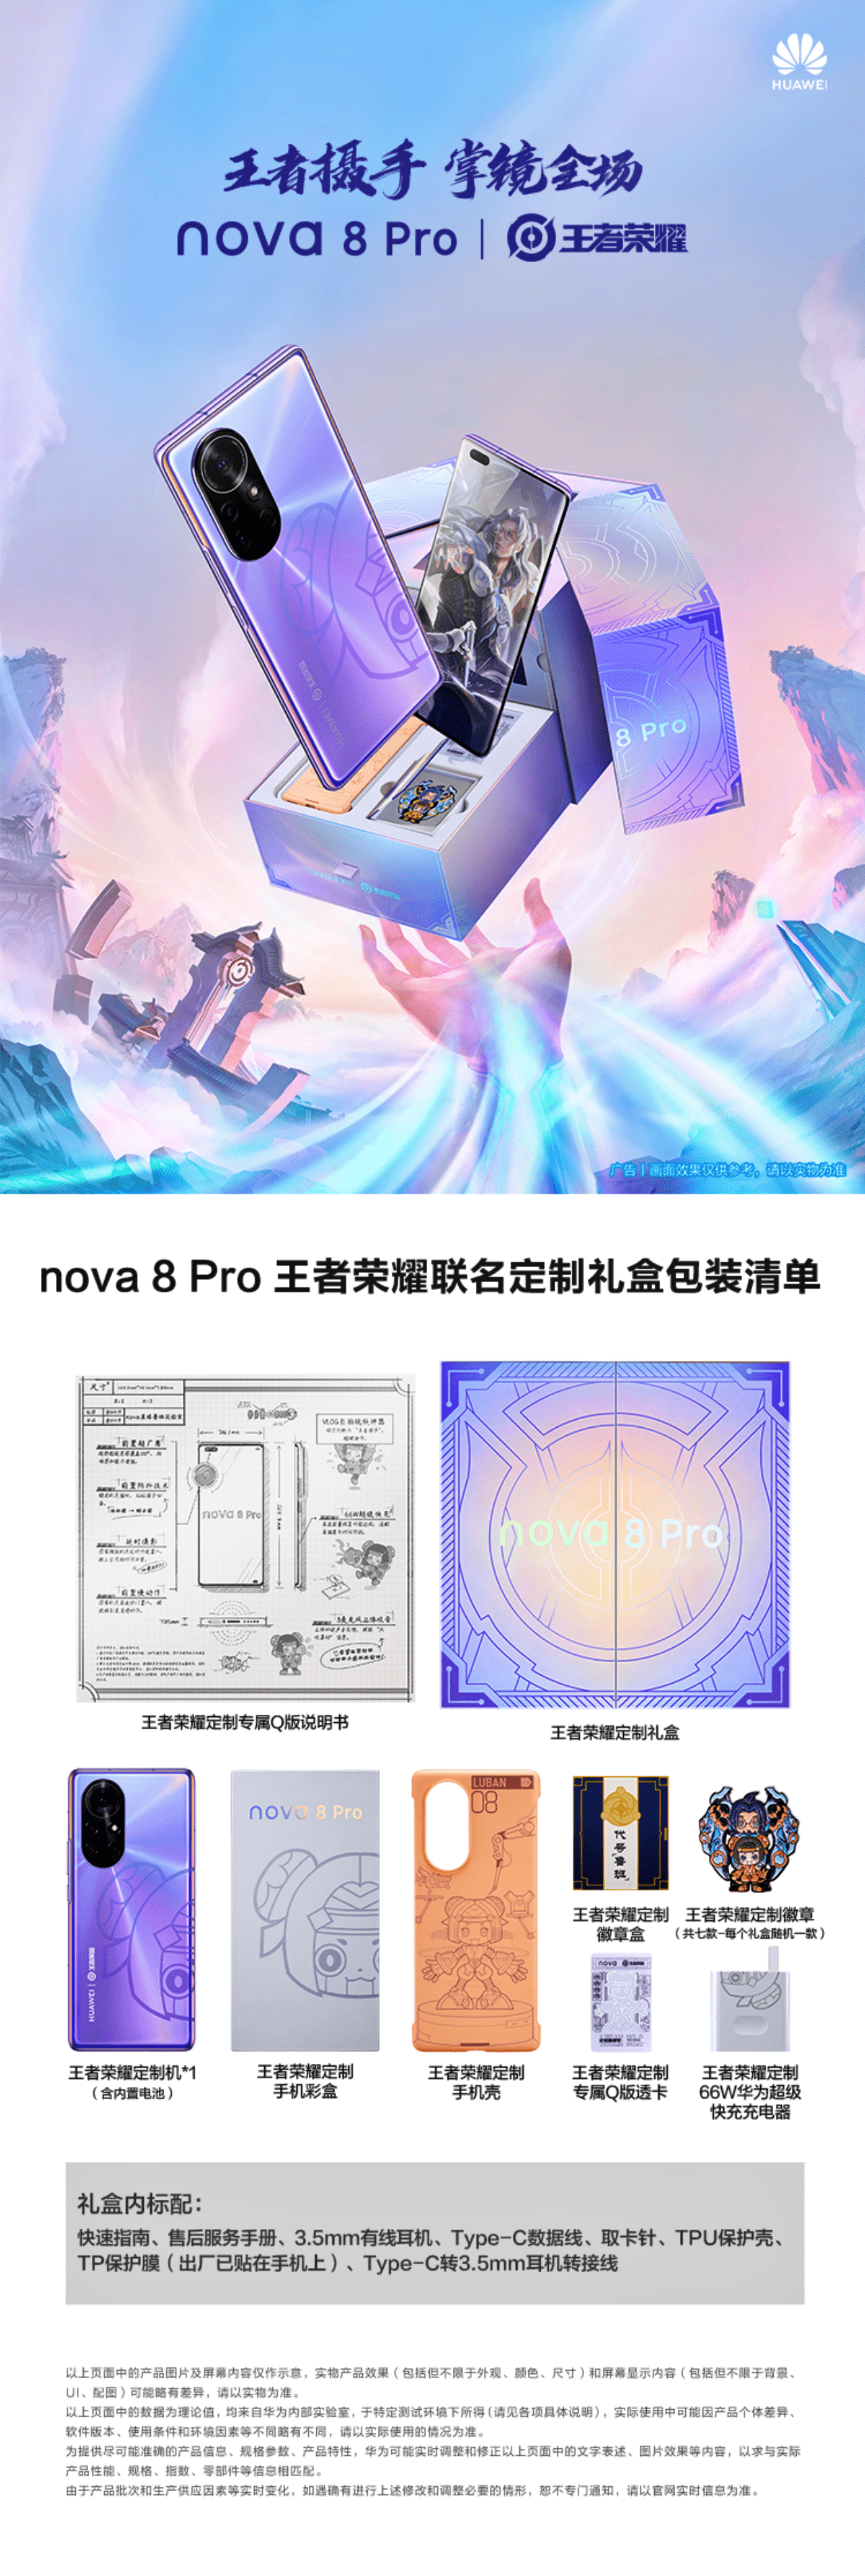 Huawei Nova 8 Pro King of Glory Edition đã chính thức công bố